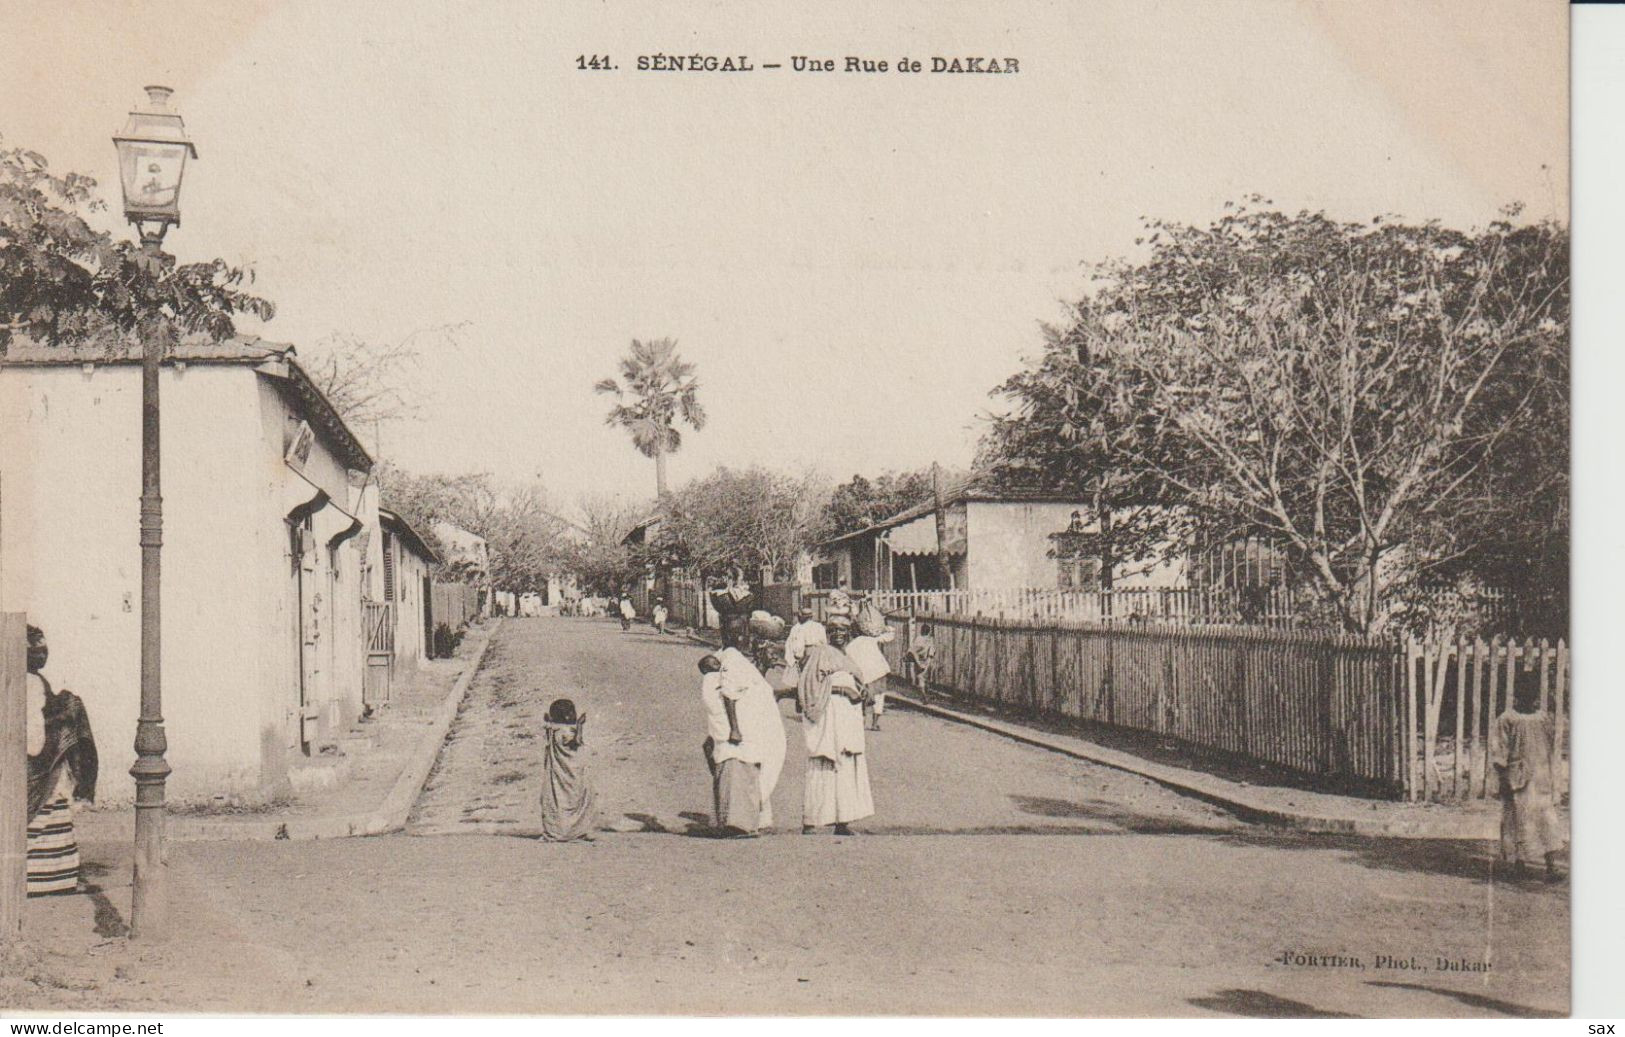 2416-142 Av 1905 N°141 Sénégal Une Rue De Dakar  Fortier Photo Dakar  Retrait 04-05 - Senegal